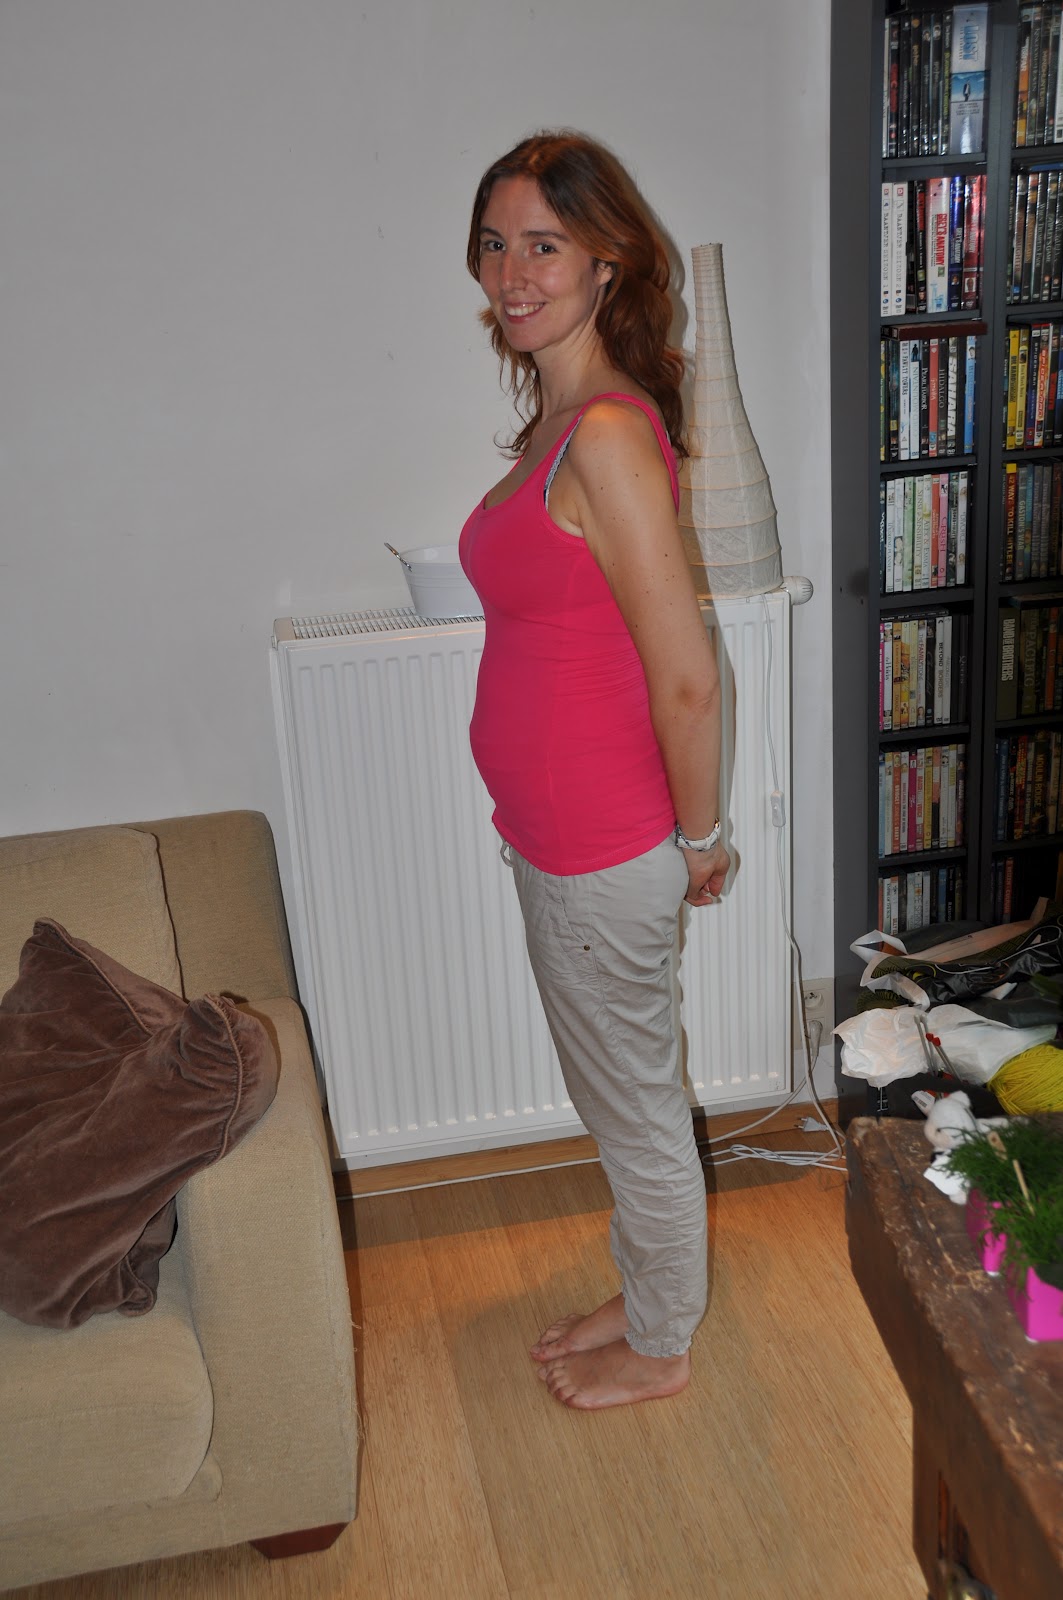 18 weeks pregnant